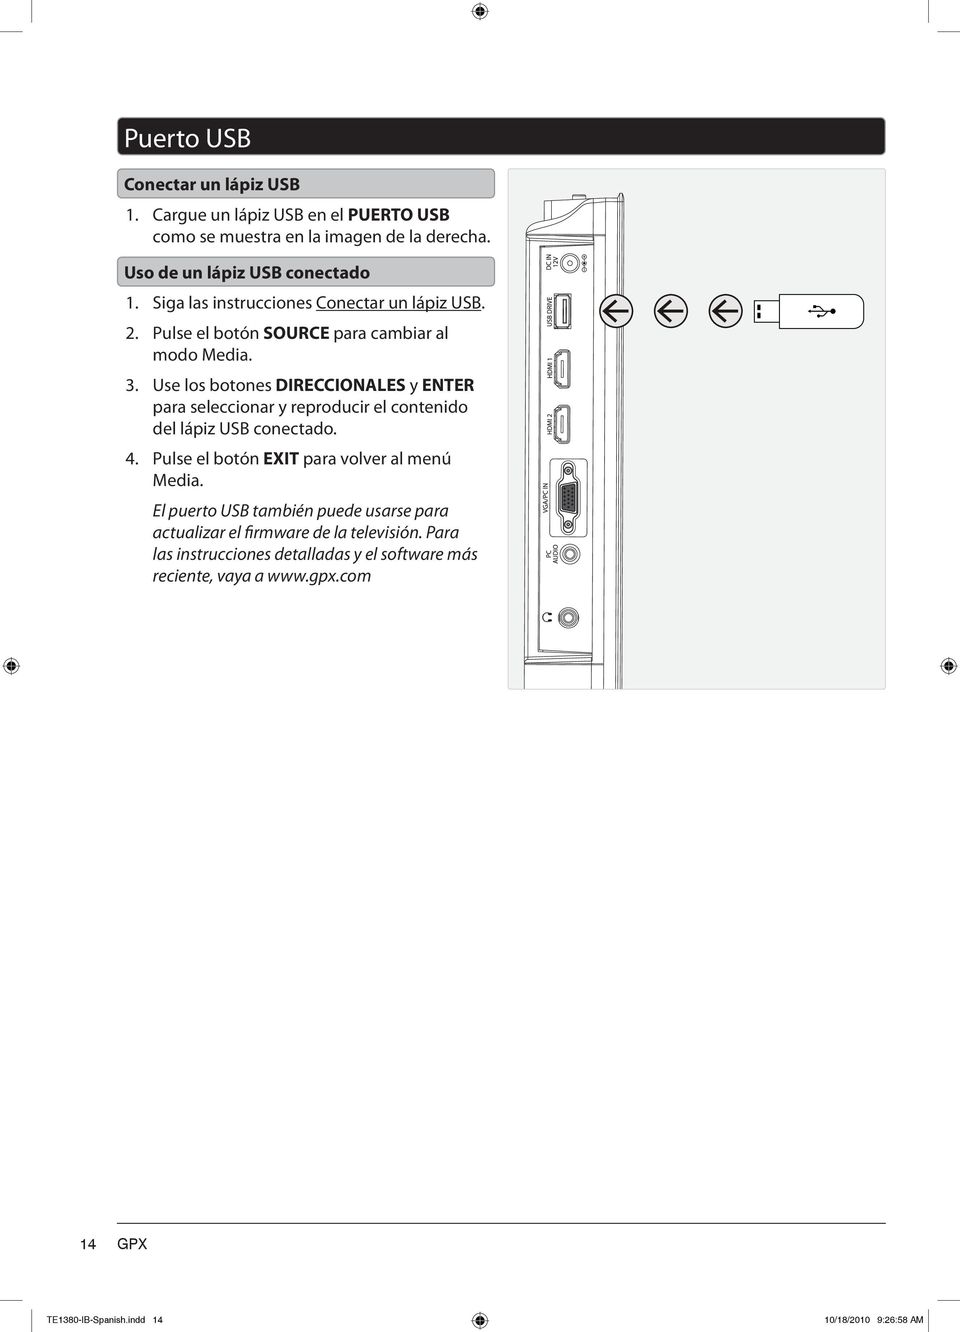 Use los botones DIRECCIONALES y ENTER para seleccionar y reproducir el contenido del lápiz USB conectado. 4. Pulse el botón EXIT para volver al menú Media.